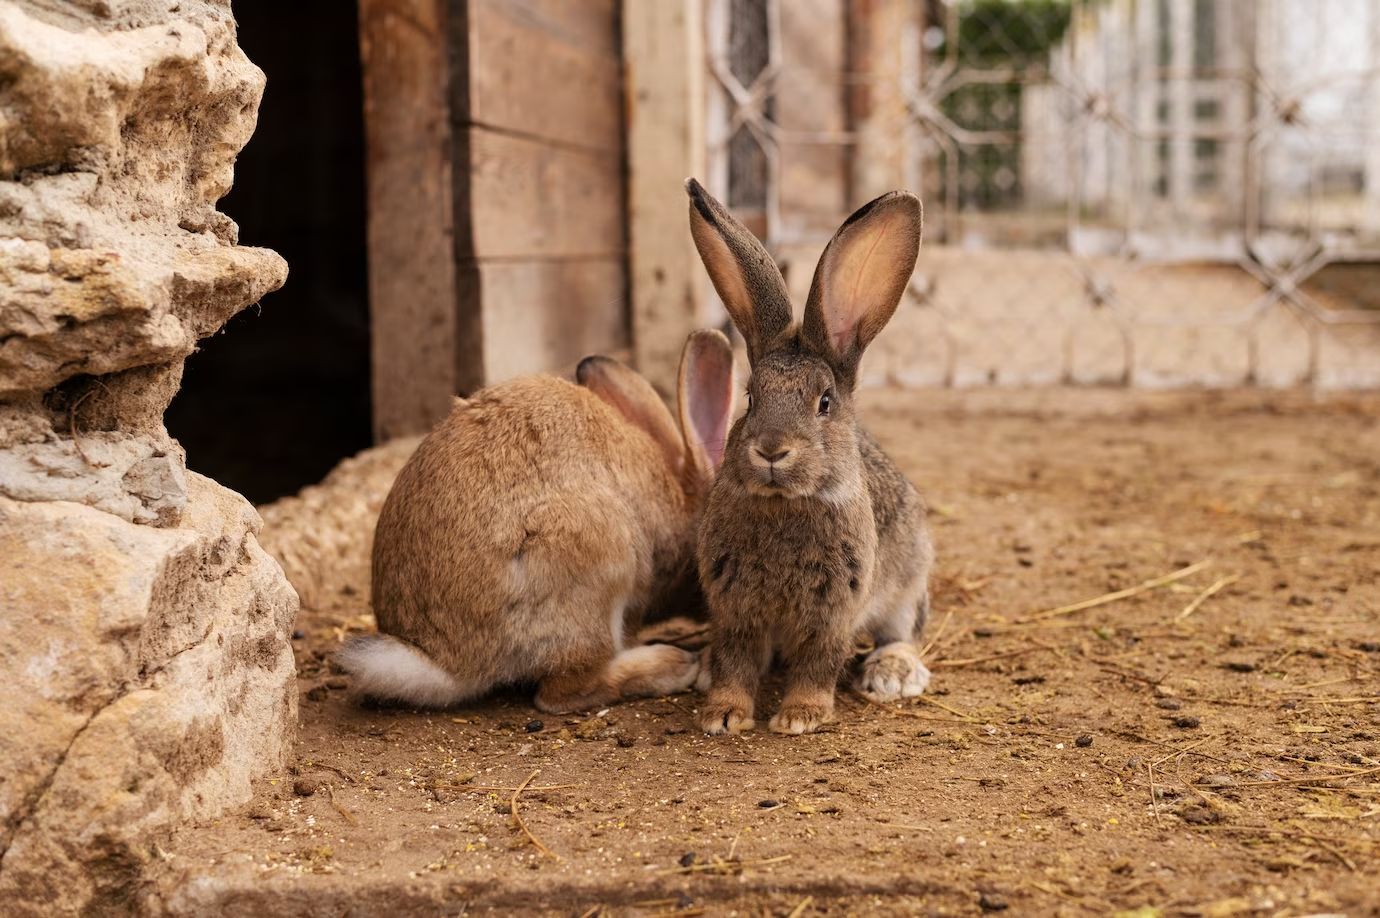  กระต่ายเป็นสัตว์สังคมชอบอาศัยอยู่เป็นฝูง